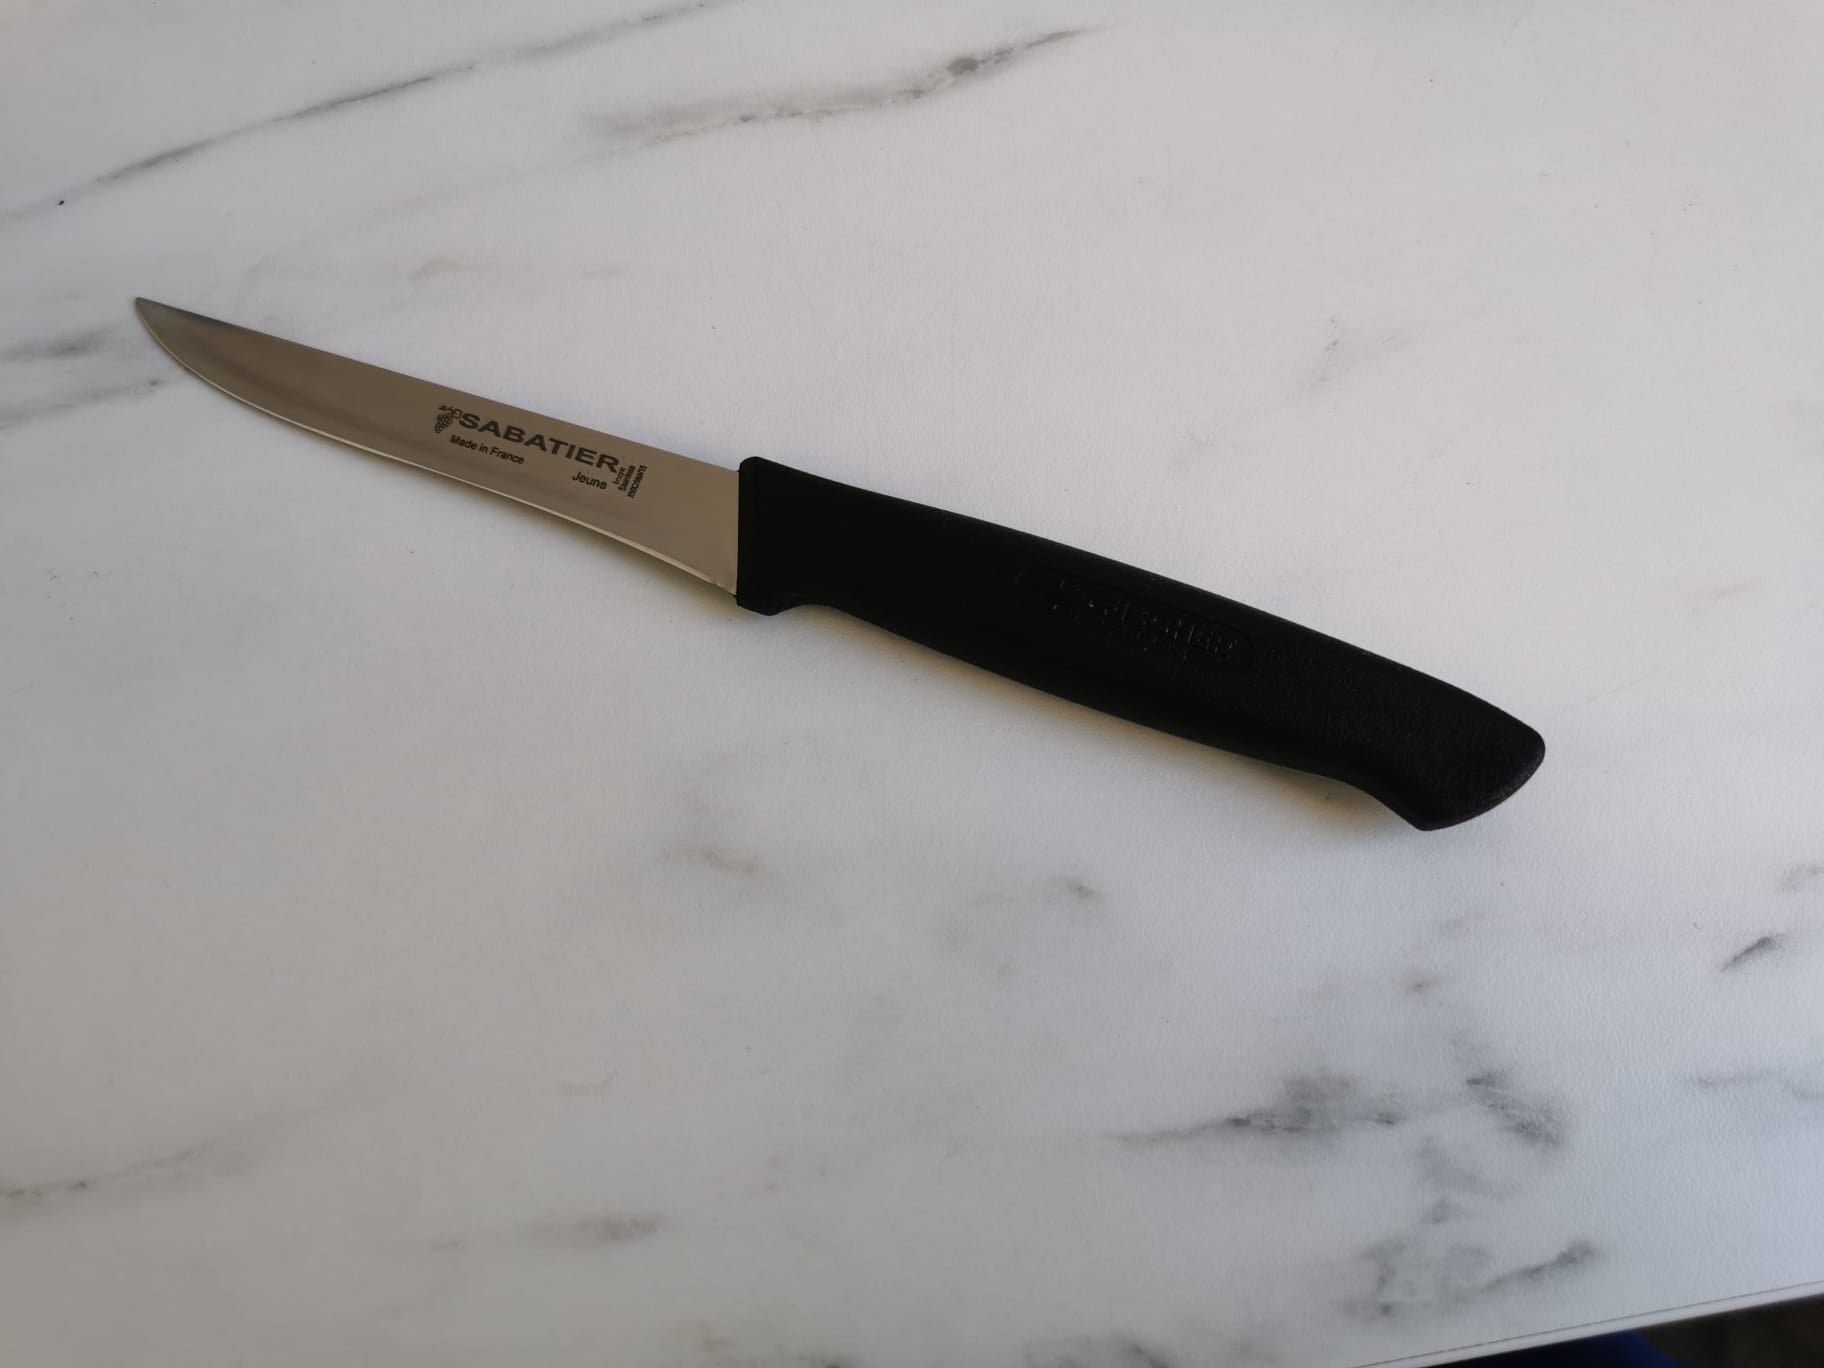 Couteaux de table à steak Sabatier France - ALLWENEEDIS